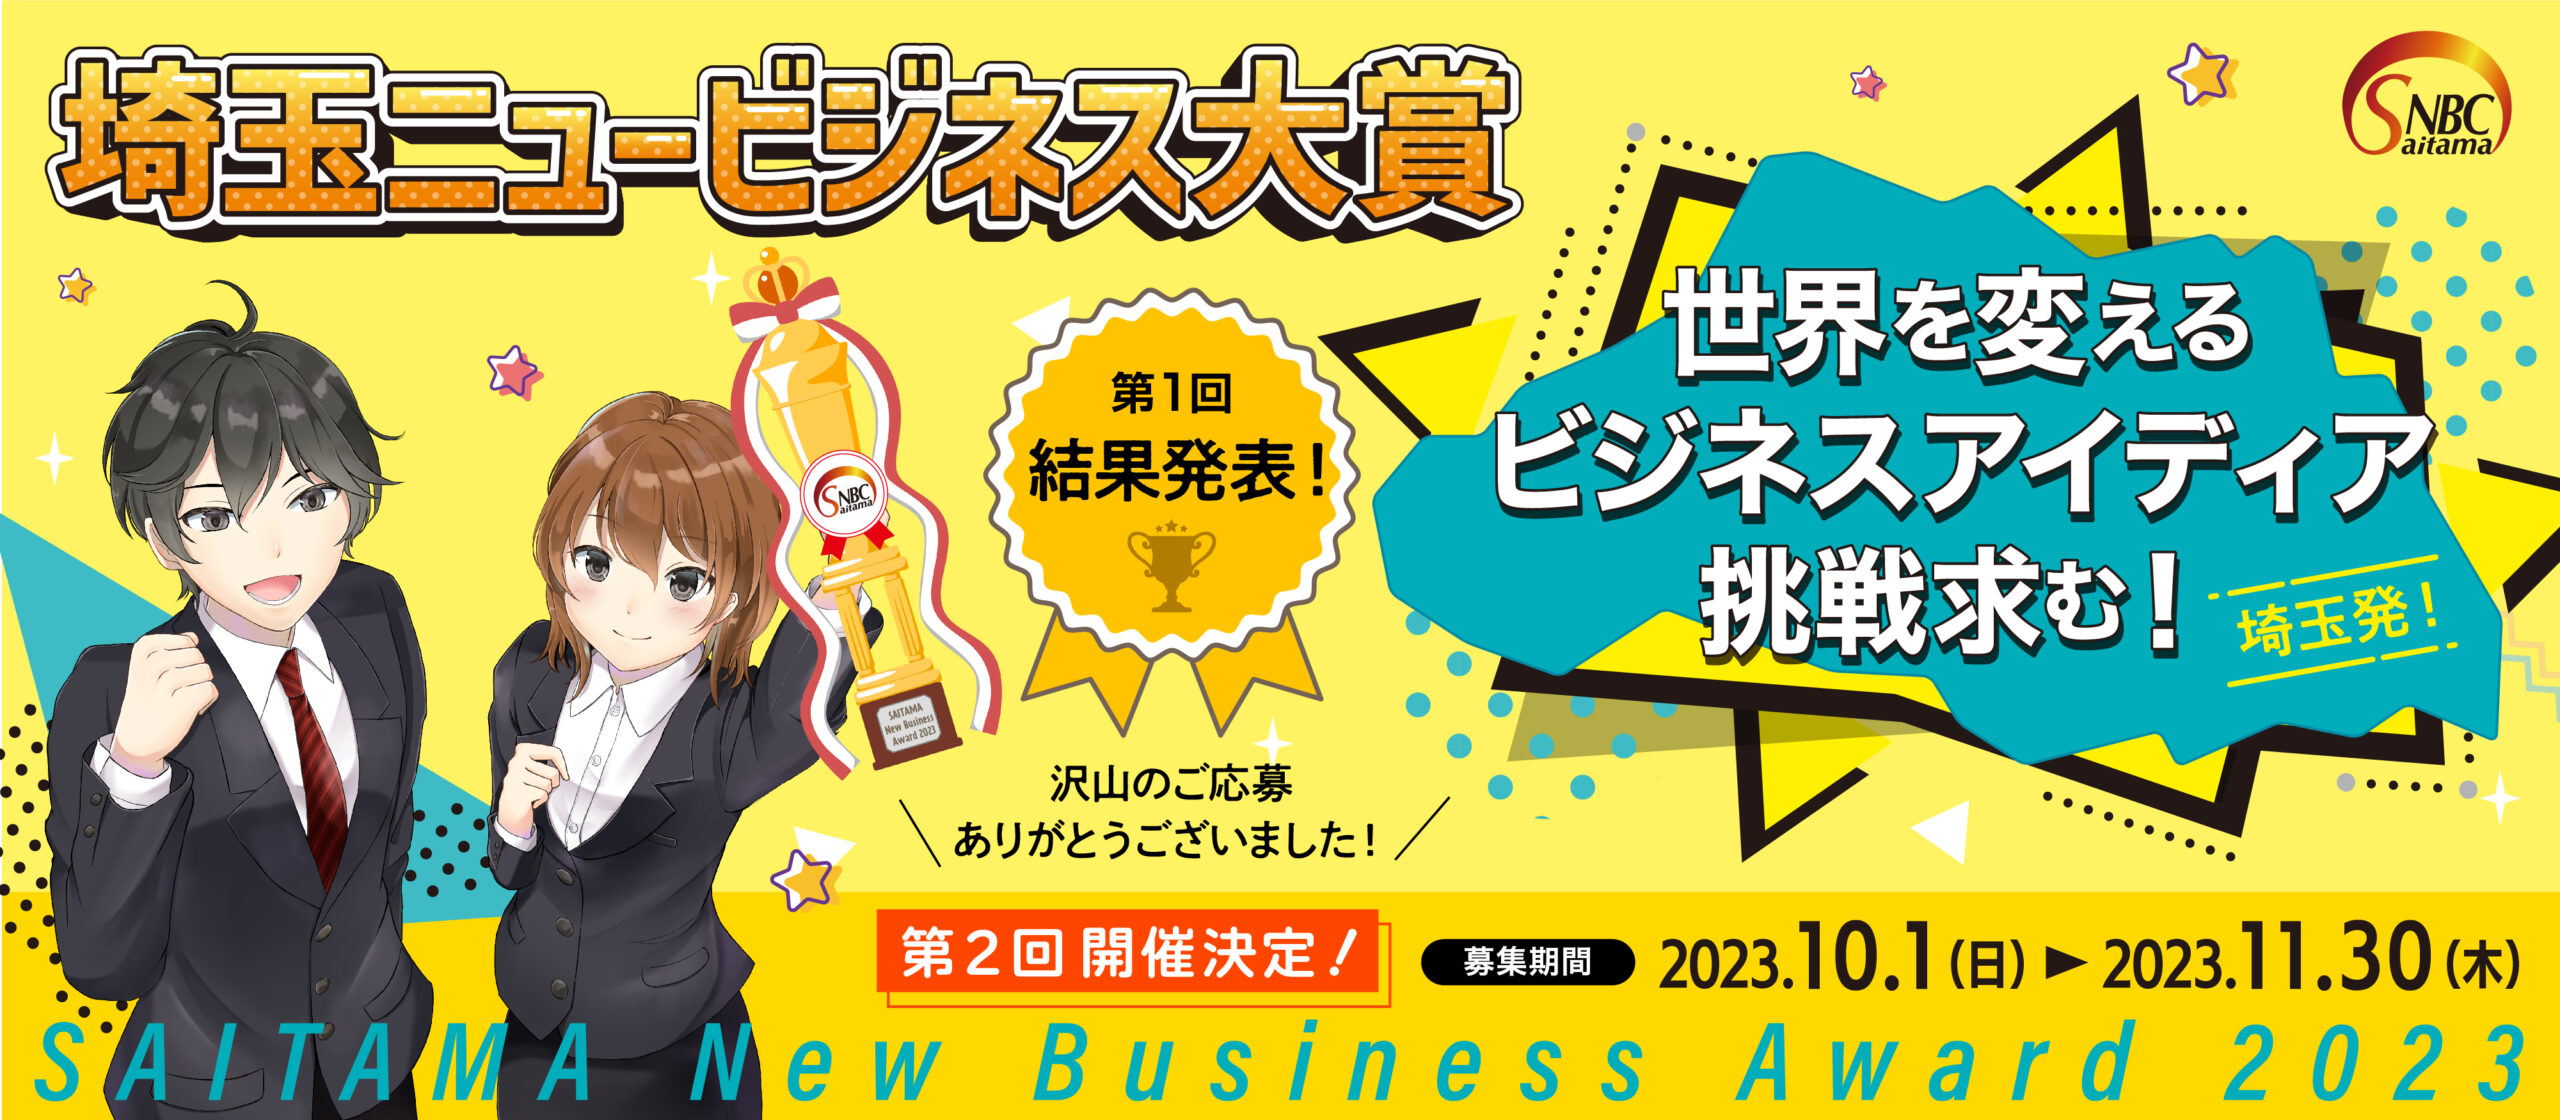 第一回 埼玉ニュービジネス大賞【SAITAMA New Busuness Award 2023】